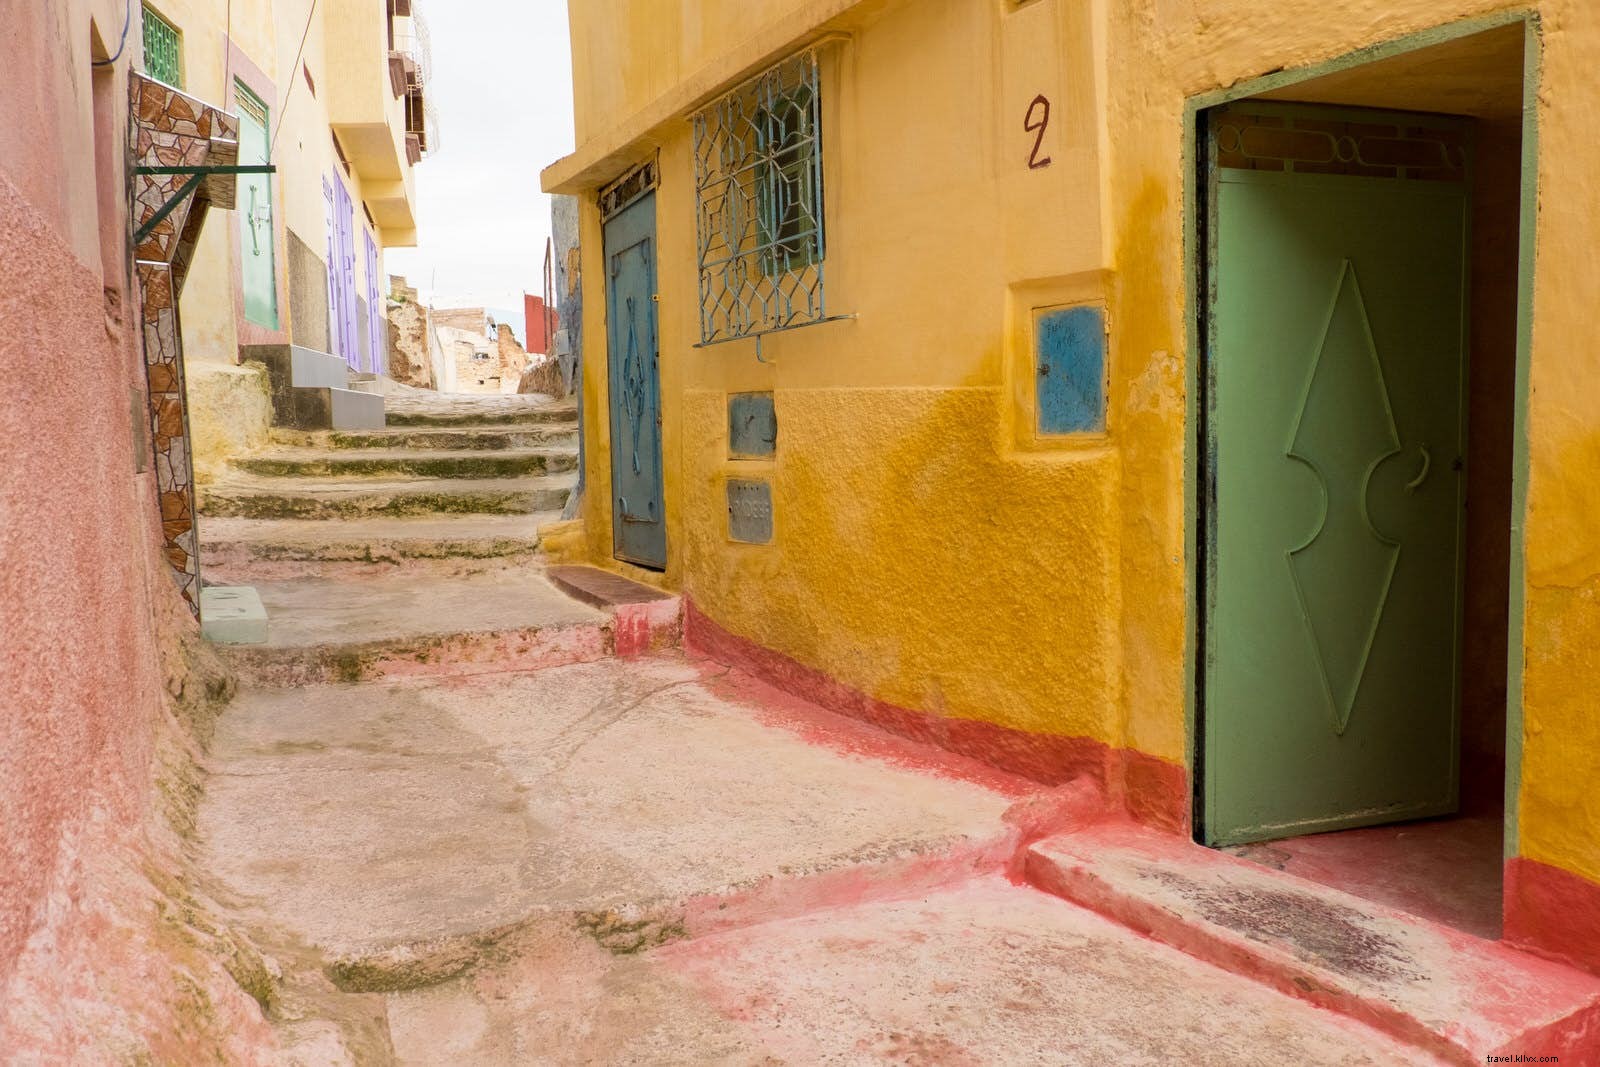 Singes, ruines et maisons troglodytes dans le Moyen Atlas solitaire du Maroc 